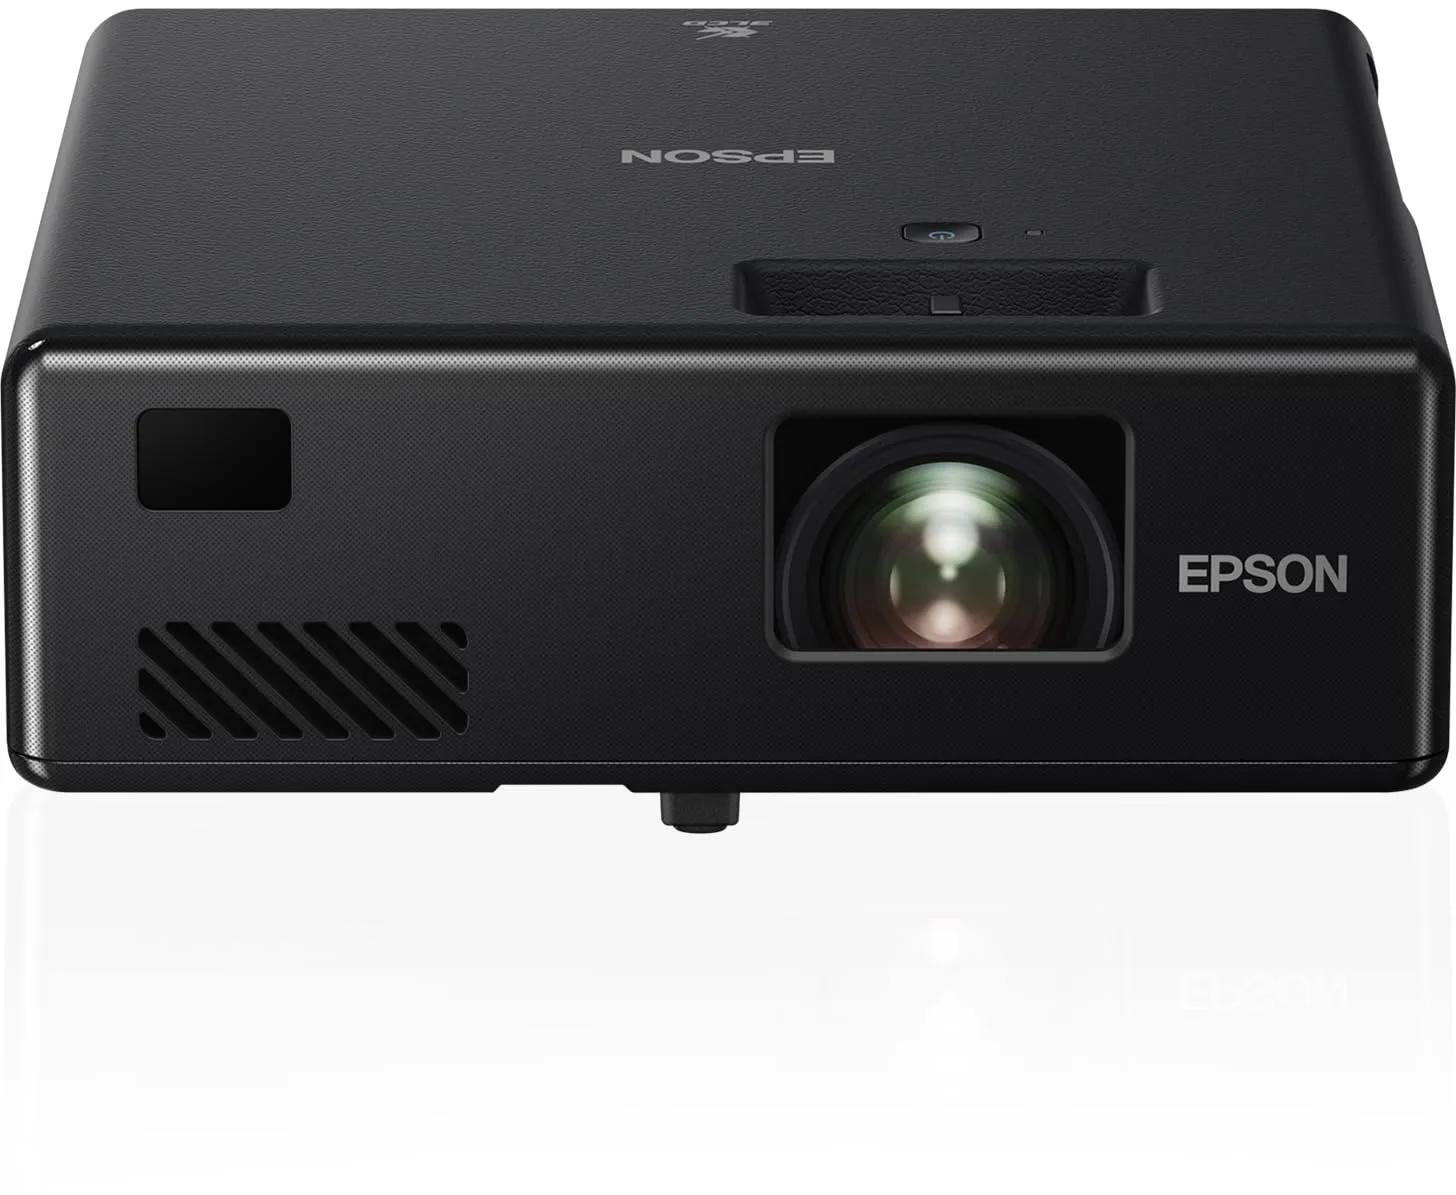 Epson EF-11 tragbarer 3LCD-Laserprojektor (Full HD 1920x1080p, 1.000 Lumen Weiß- und Farbhelligkeit, Kontrastverhältnis 2.500.000:1, nur 1,2 kg Gewicht, Miracast, HDMI)